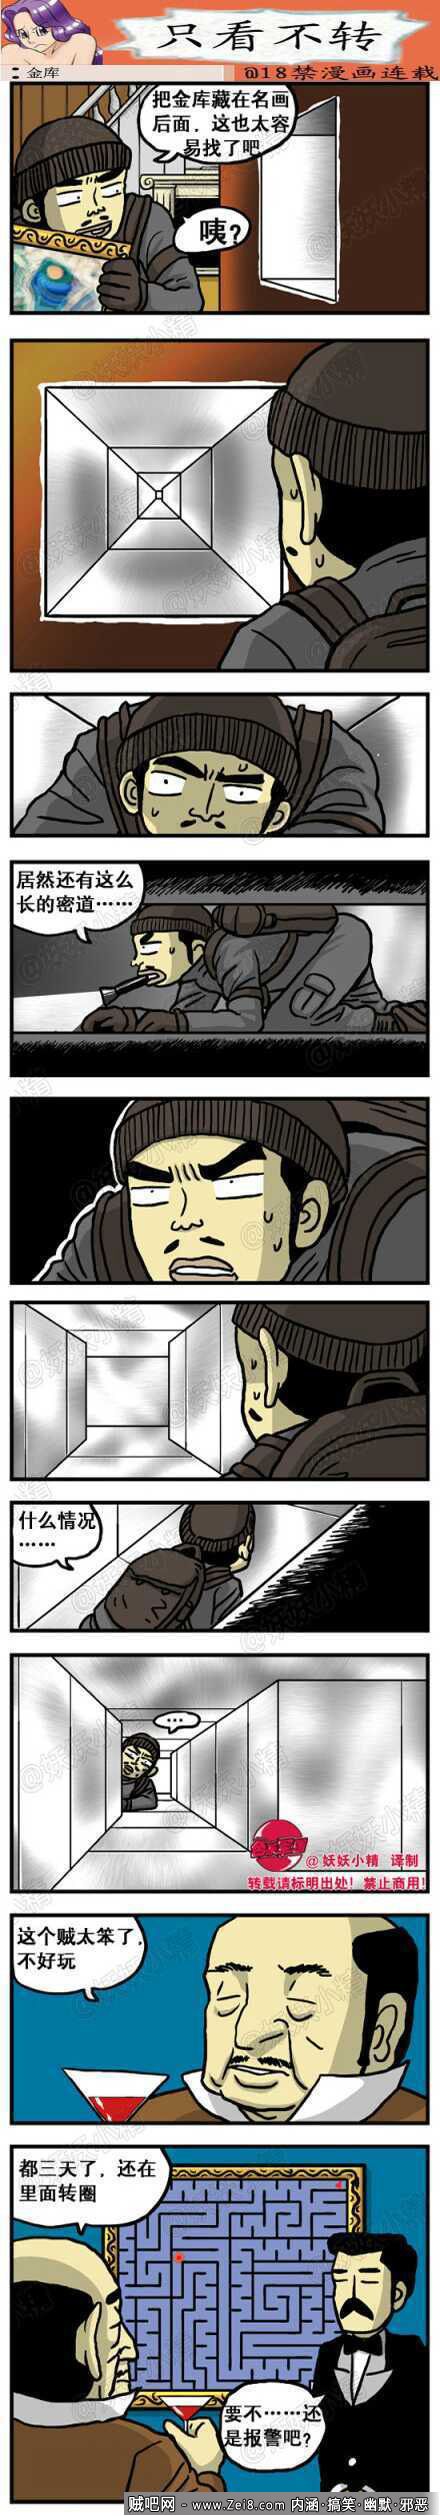 [窃贼系列爆笑漫画]：超级保险柜